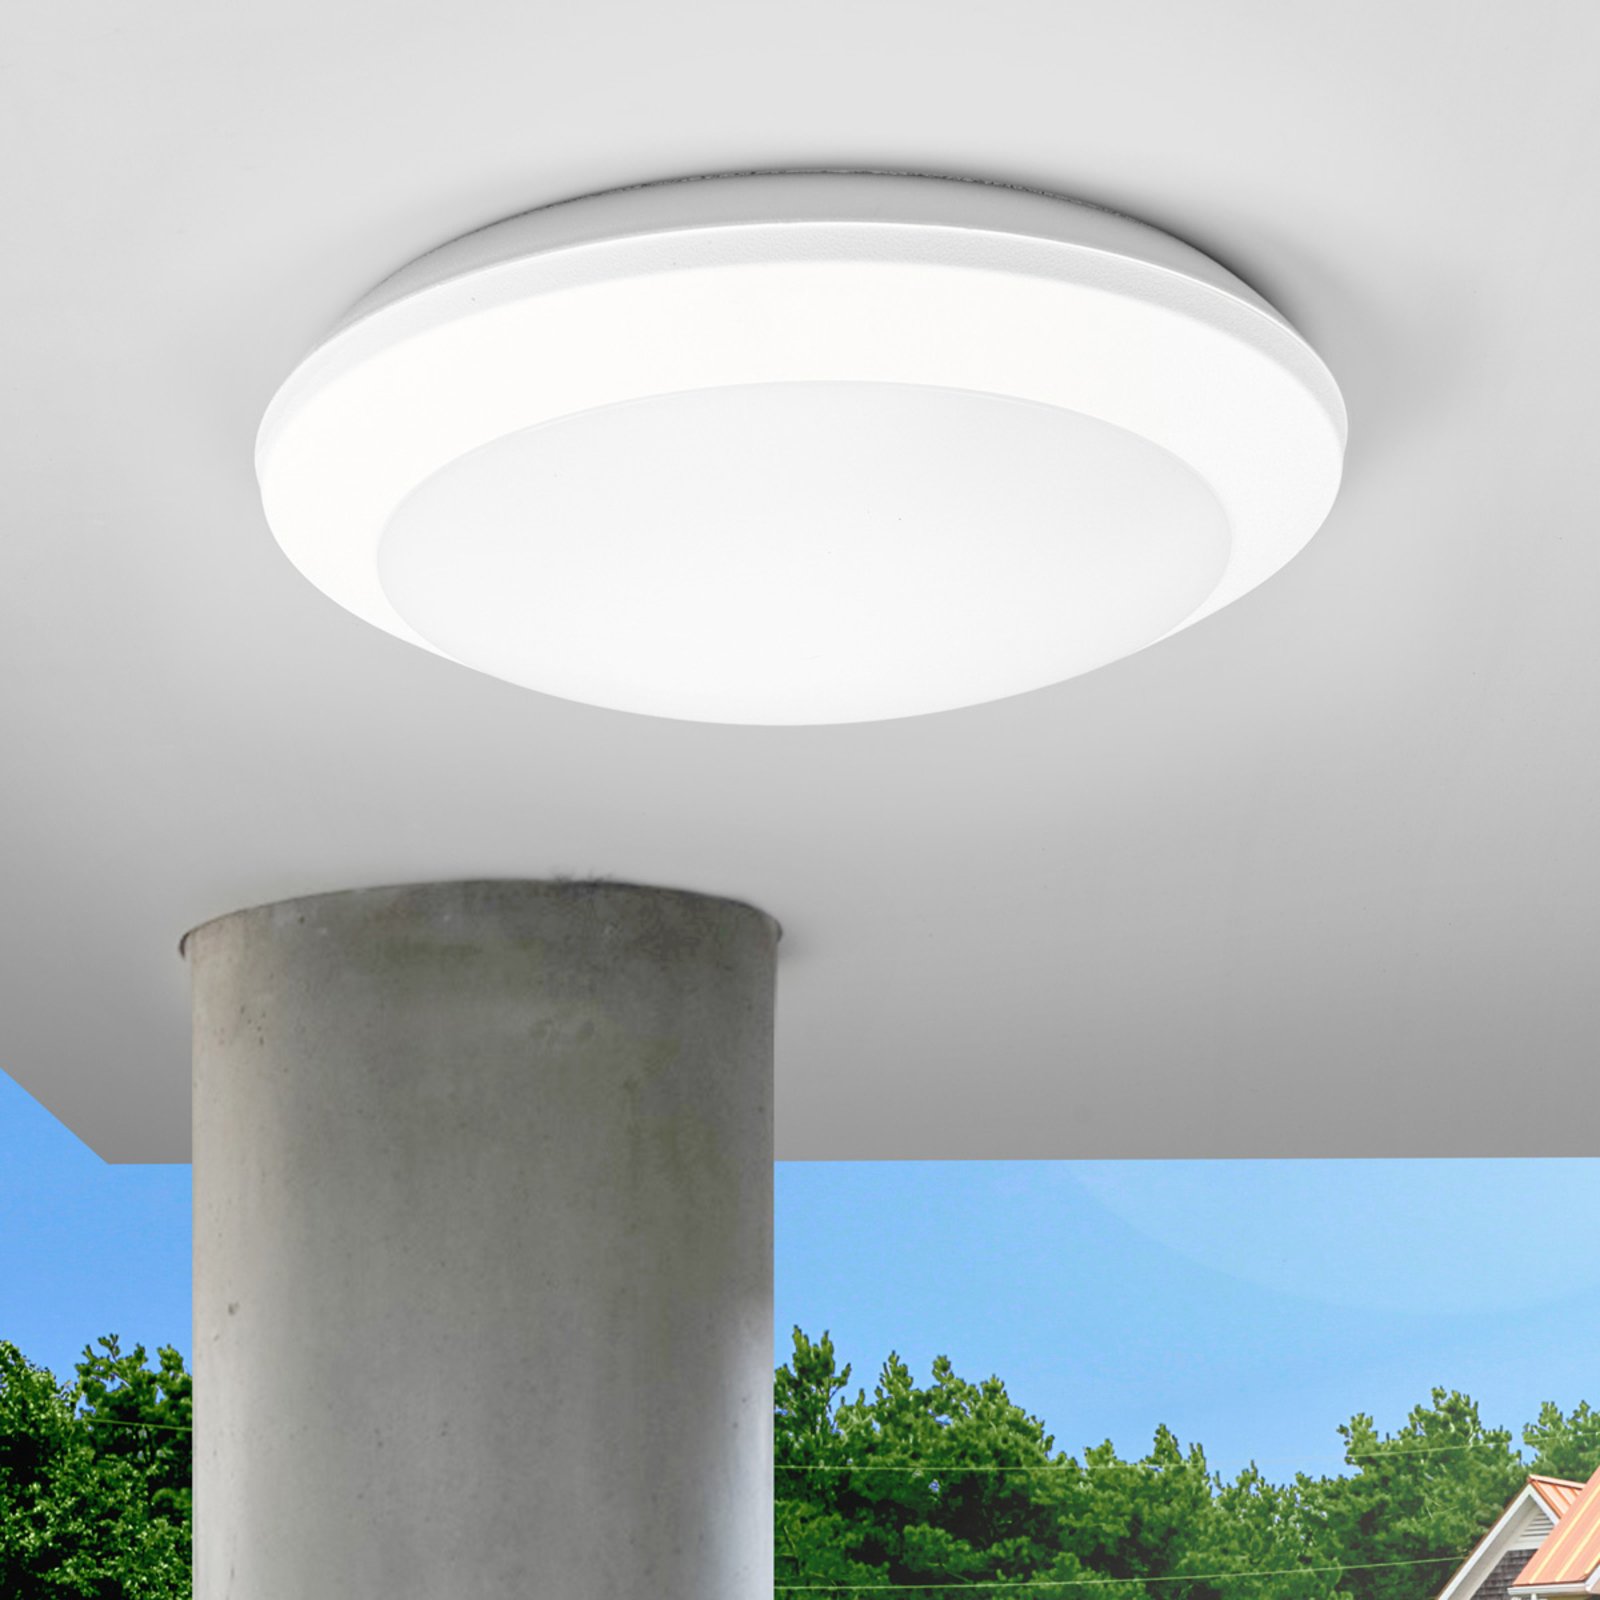 Sensor ceiling light Umberta 2xE27 white